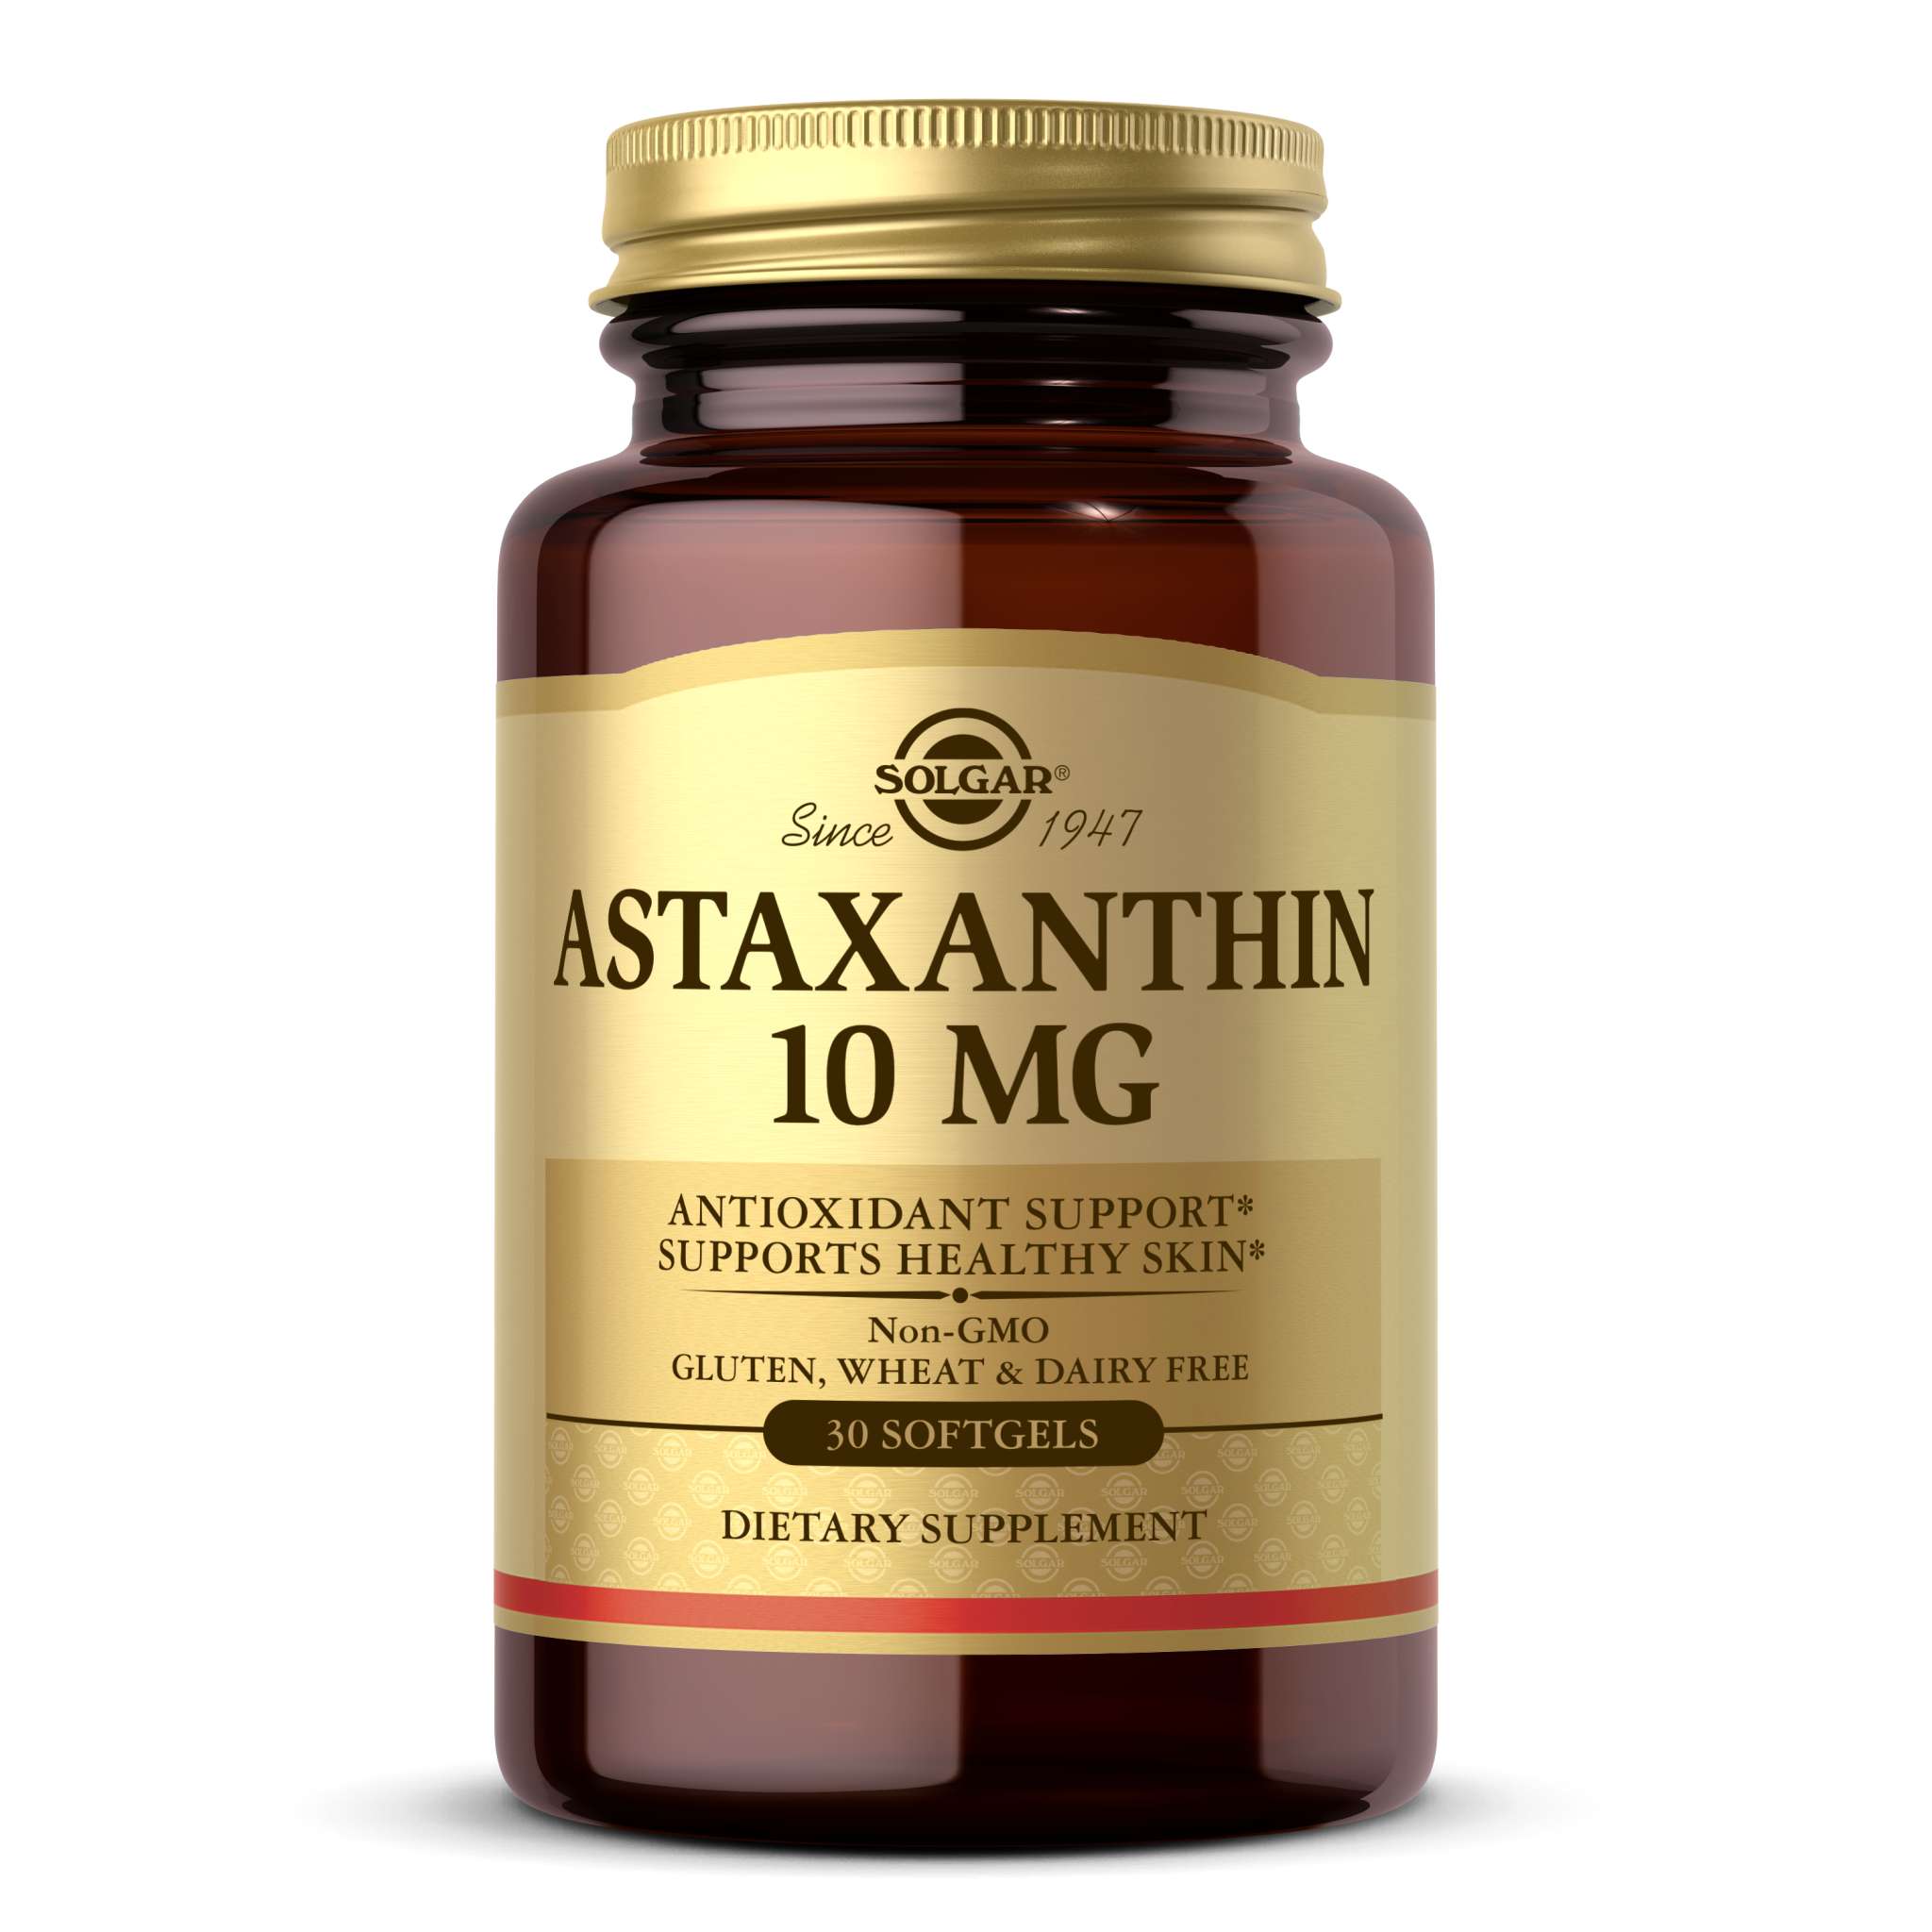 Solgar - Astaxanthin 10 mg softgel